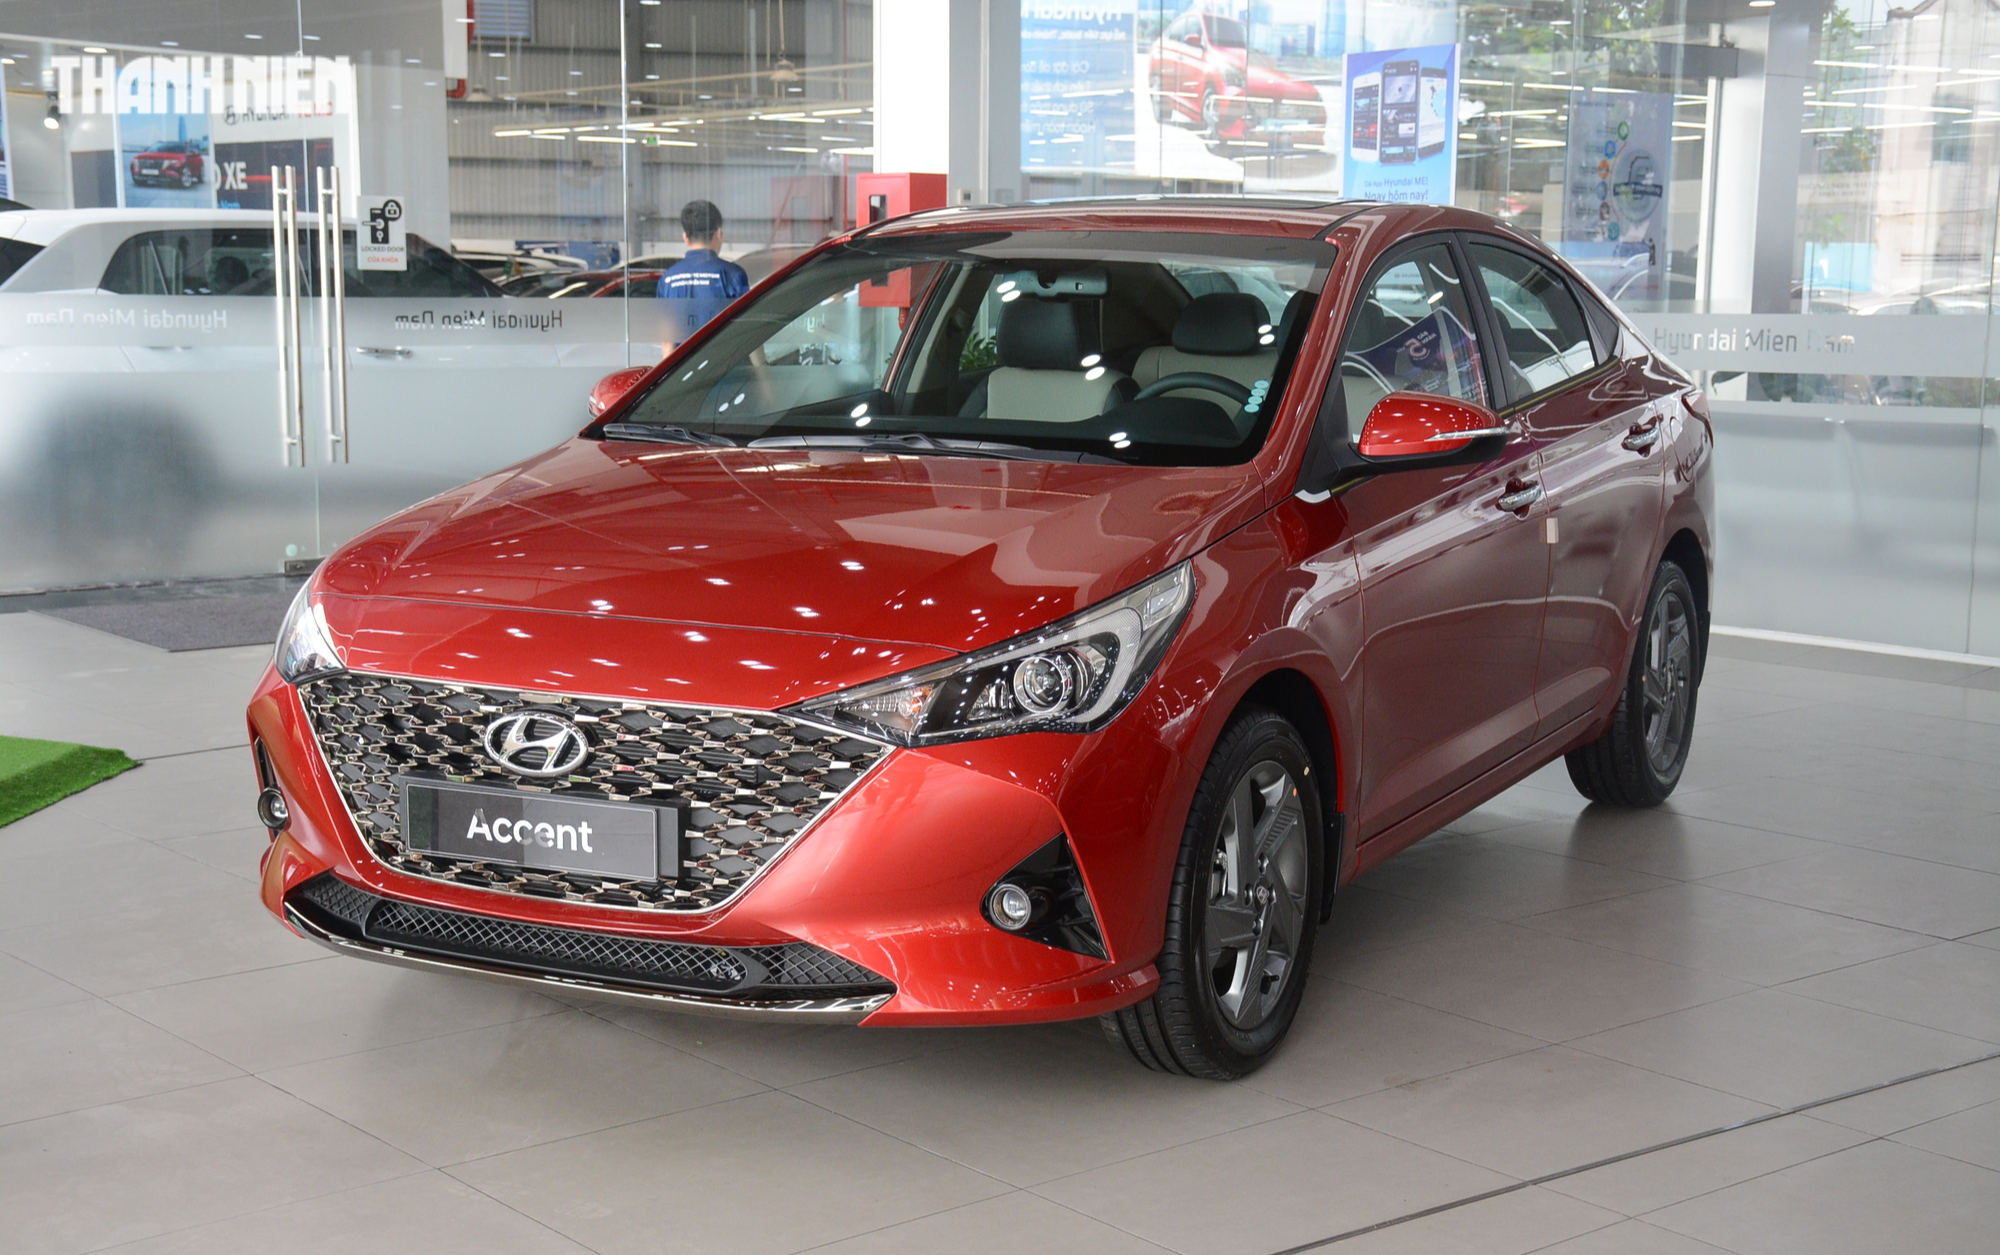 Sedan hạng B dưới 600 triệu: Hyundai Accent dẫn đầu, Toyota Vios bám sát Honda City - Ảnh 3.